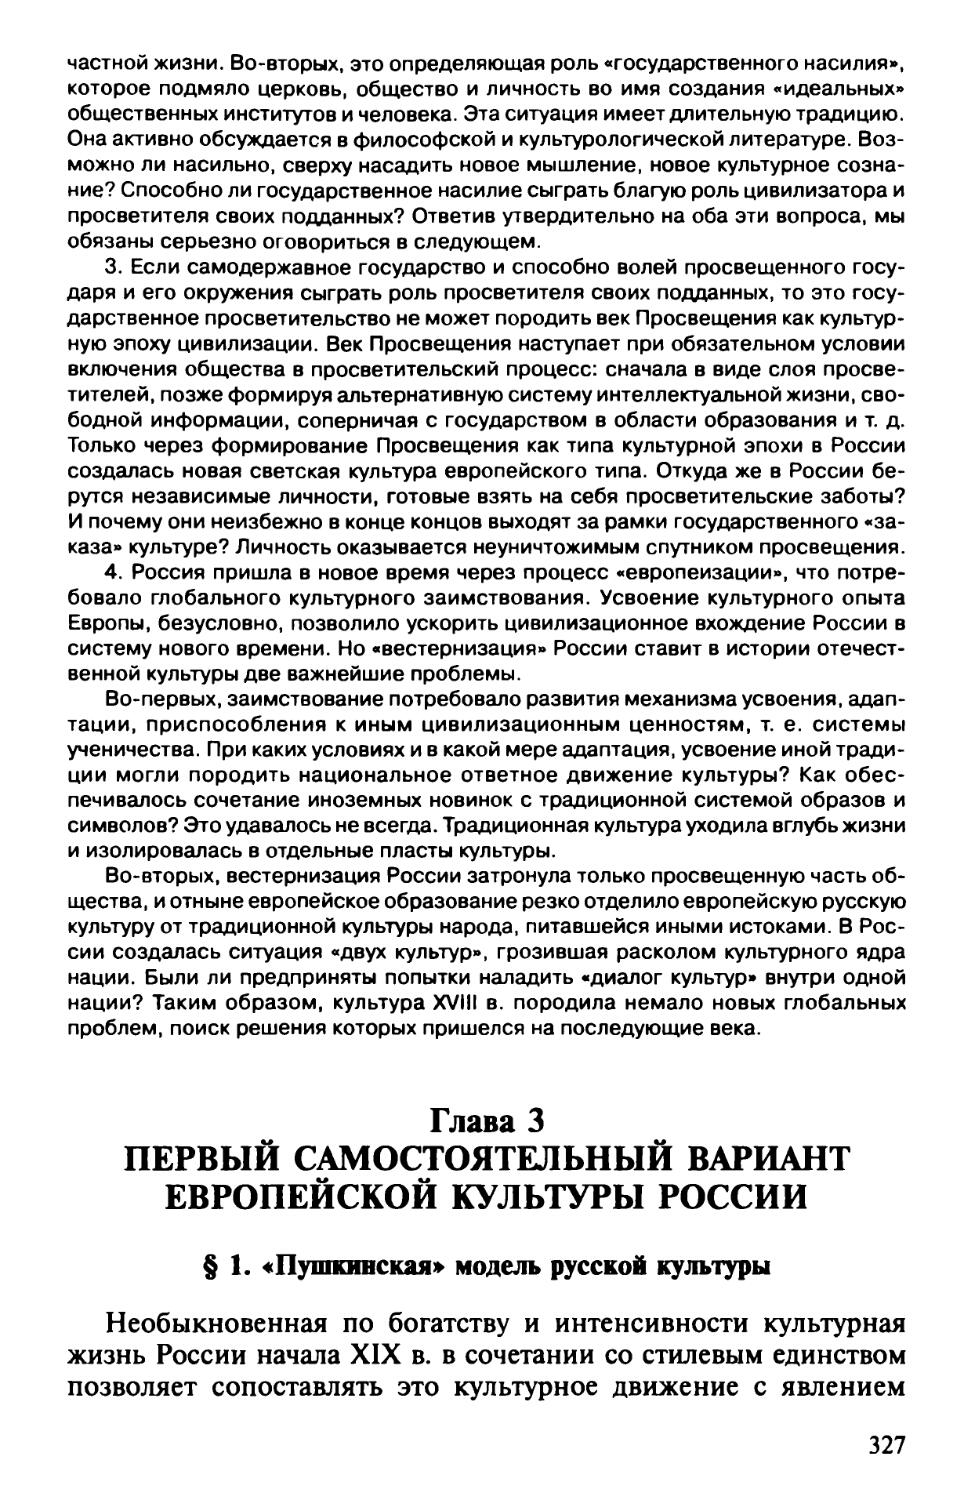 Глава 3. Первый самостоятельный вариант европейской культуры России
§ 1. «Пушкинская» модель русской культуры